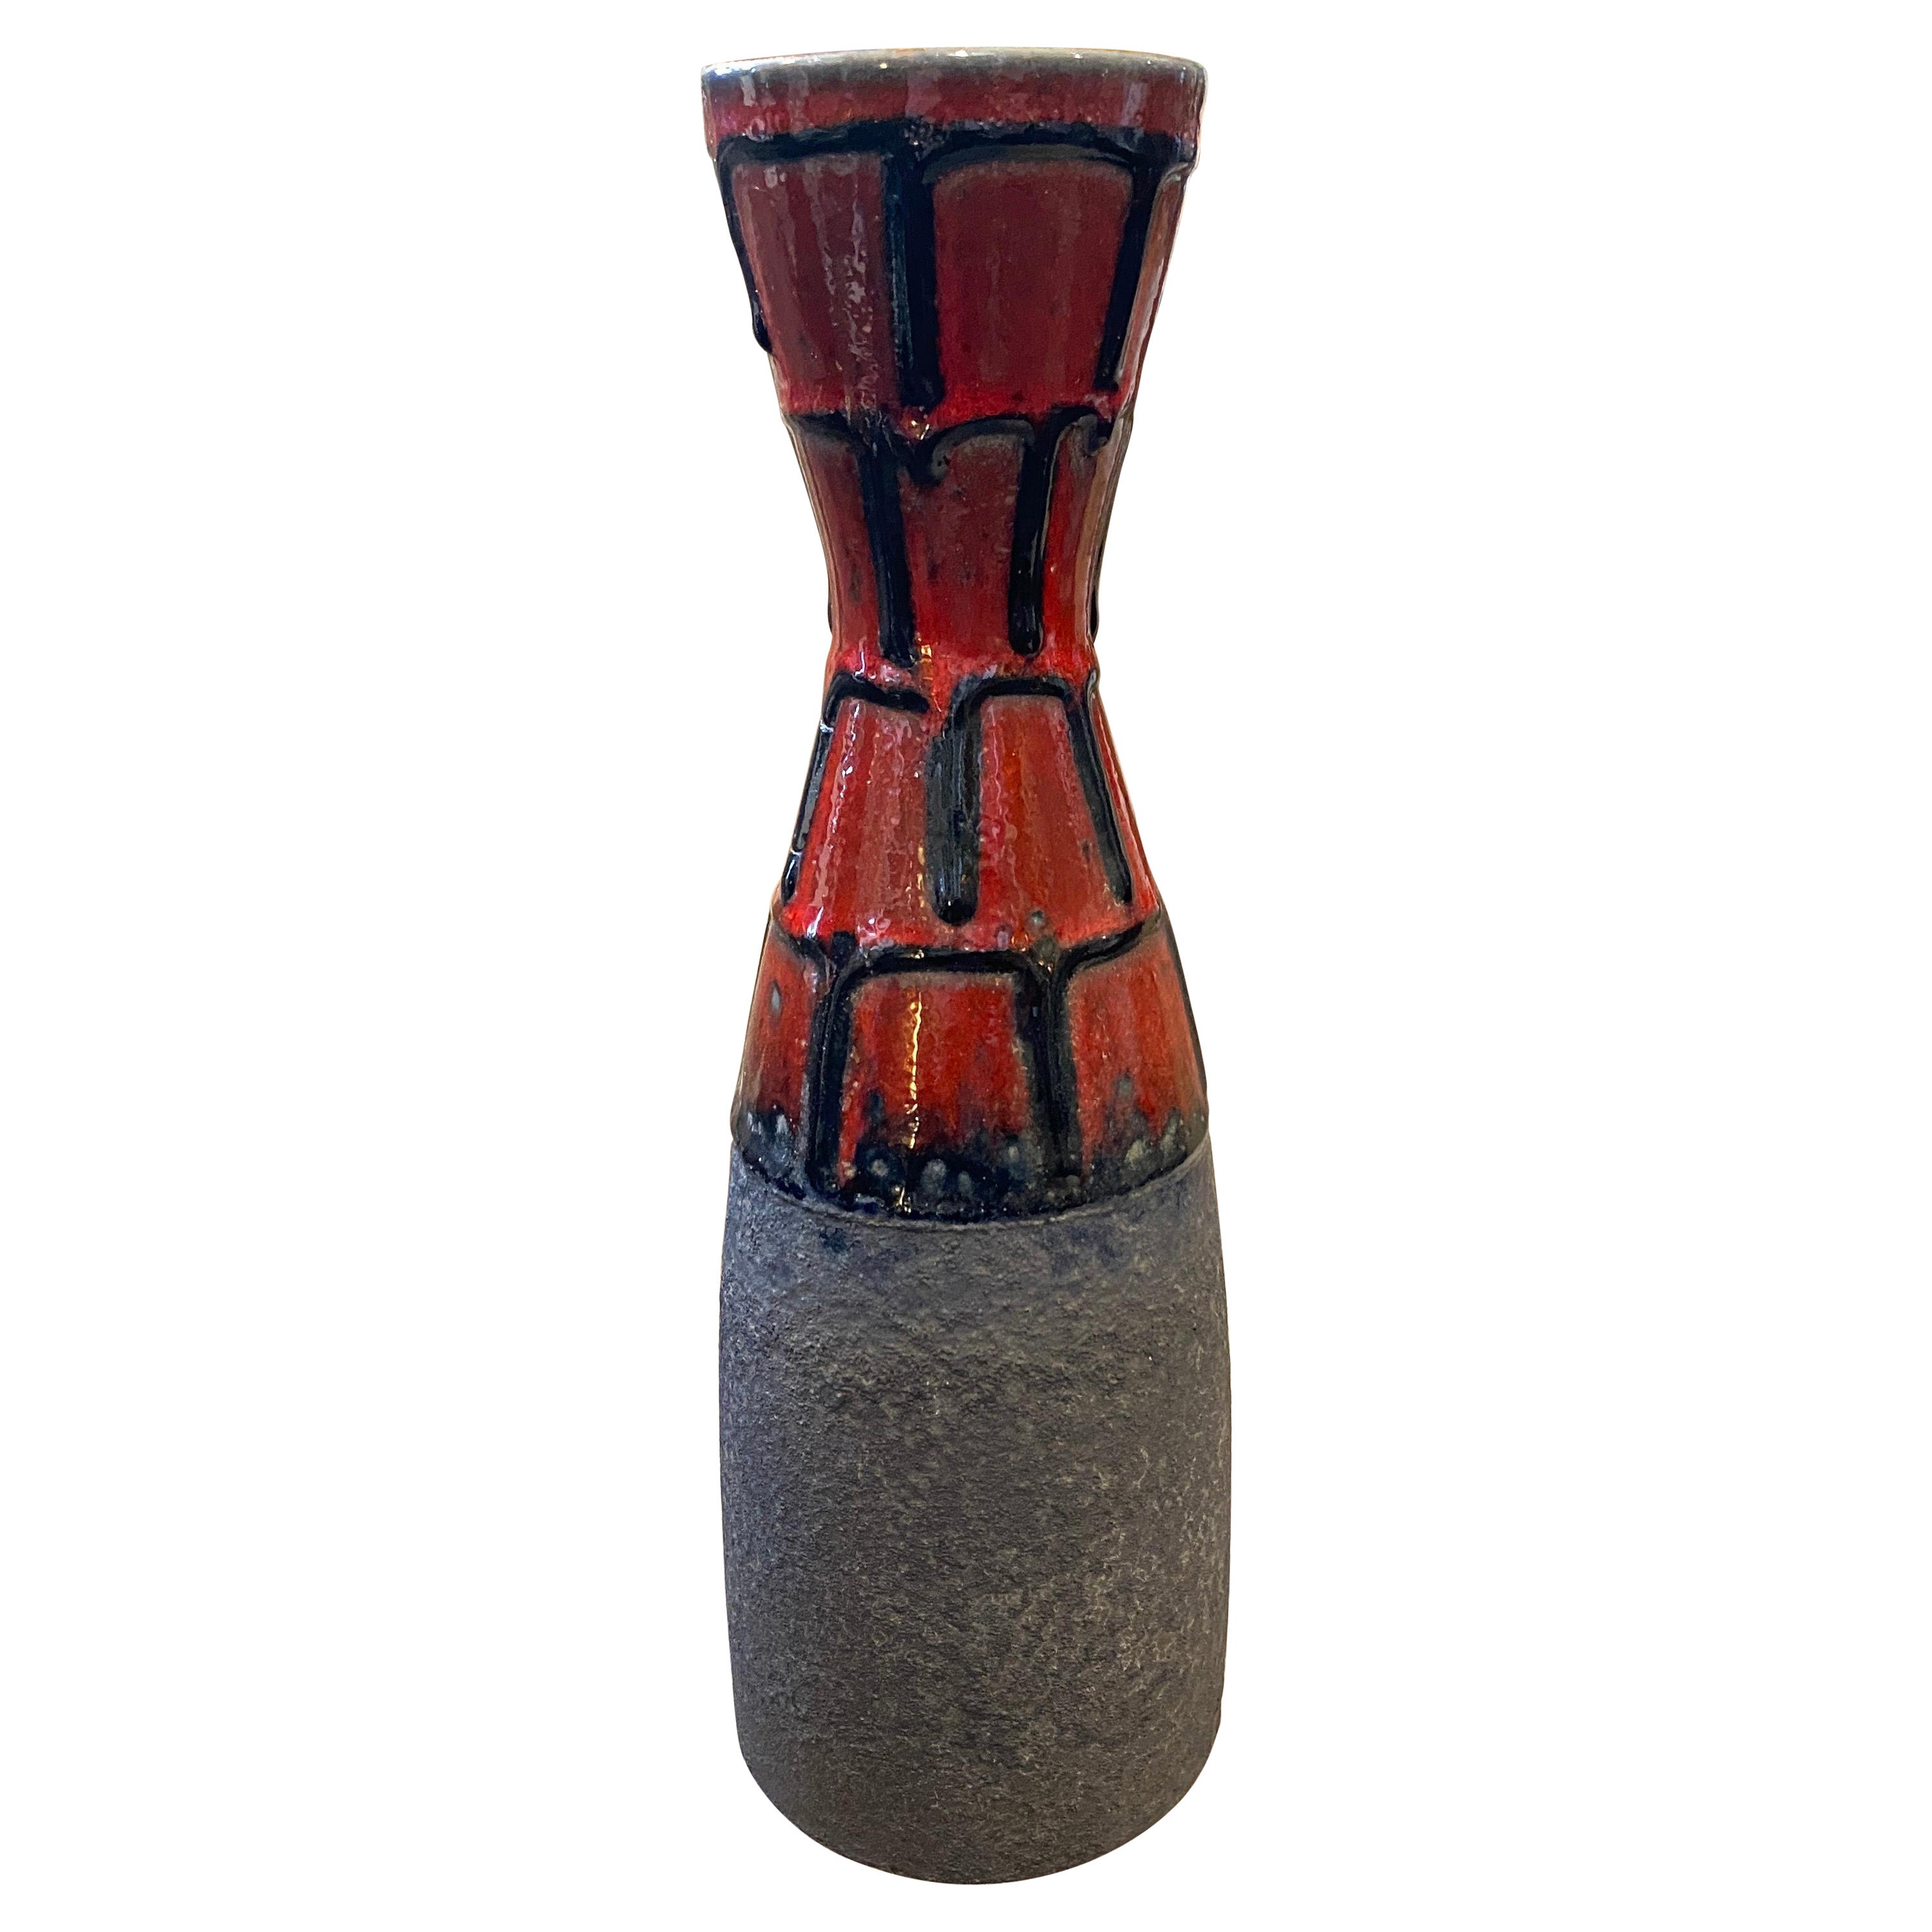 Vase en céramique de lave grasse rouge et noire des années 1970, de style moderne du milieu du siècle dernier, par Roth